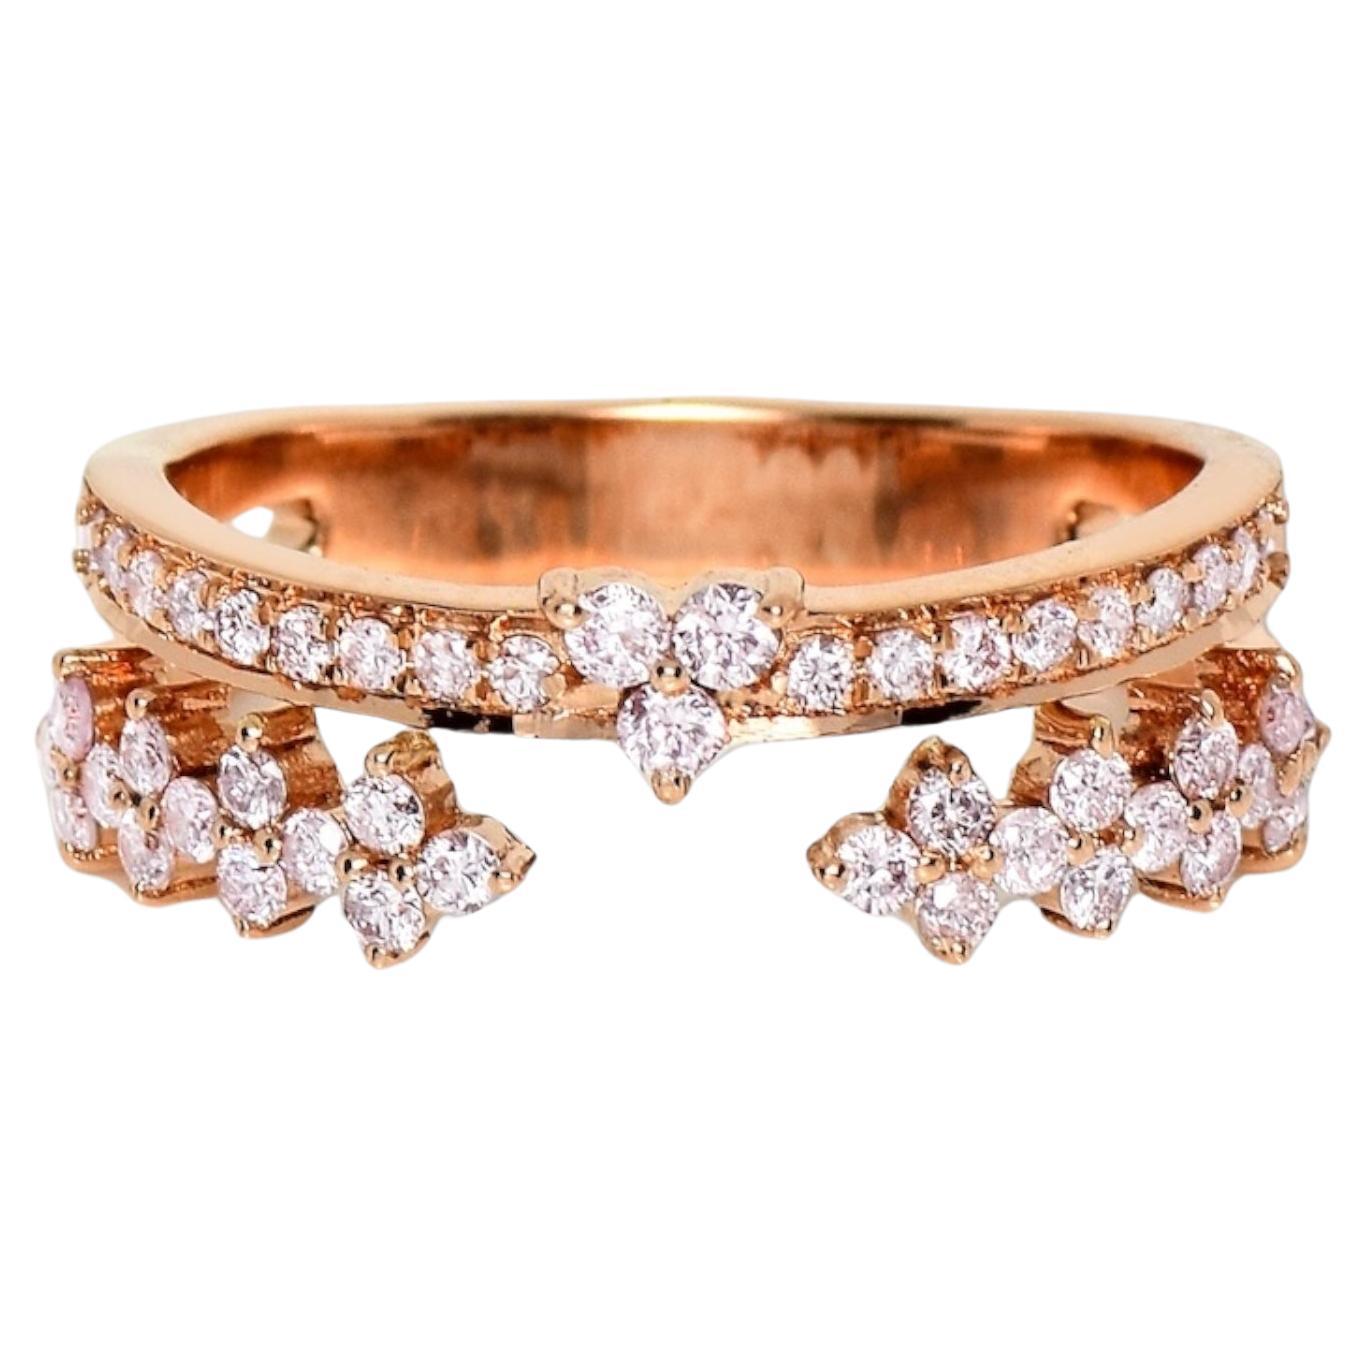 IGI 14K 0,51 ct natürliche rosa Diamanten Vintage-Verlobungsring mit Kronendesign